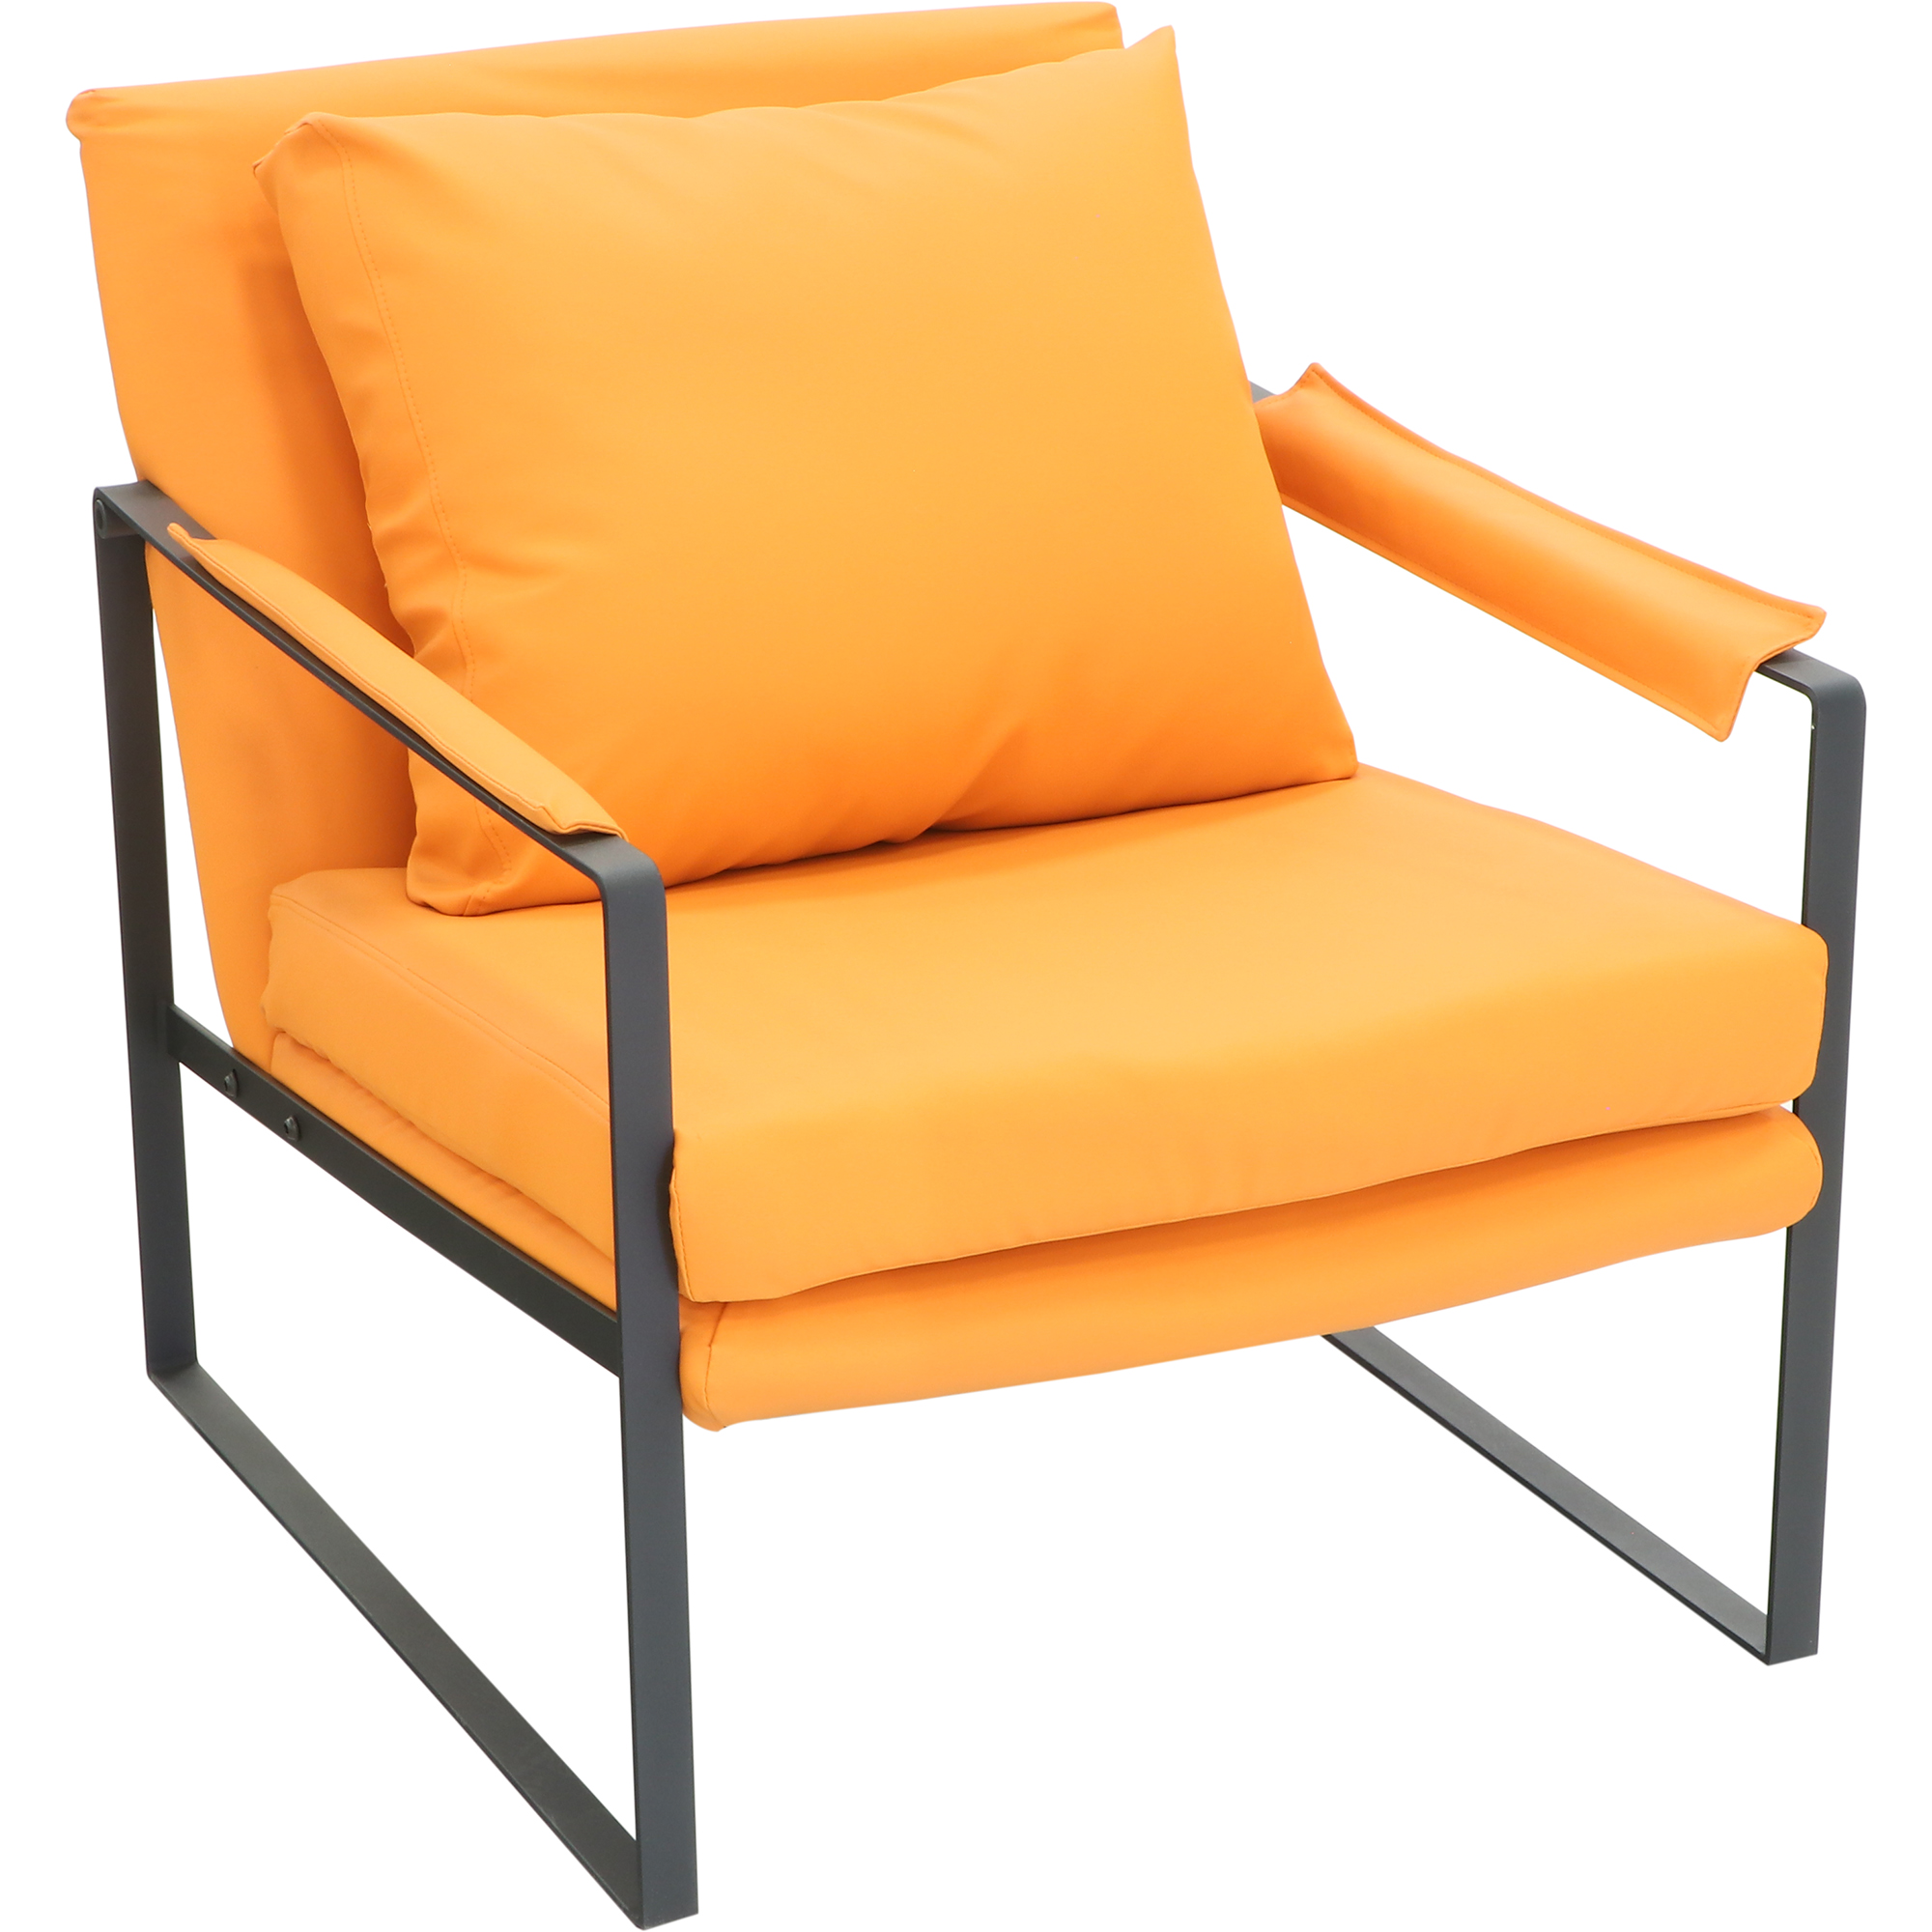 Кресло Shanshi Чарли оранжевое 70x86x75cm